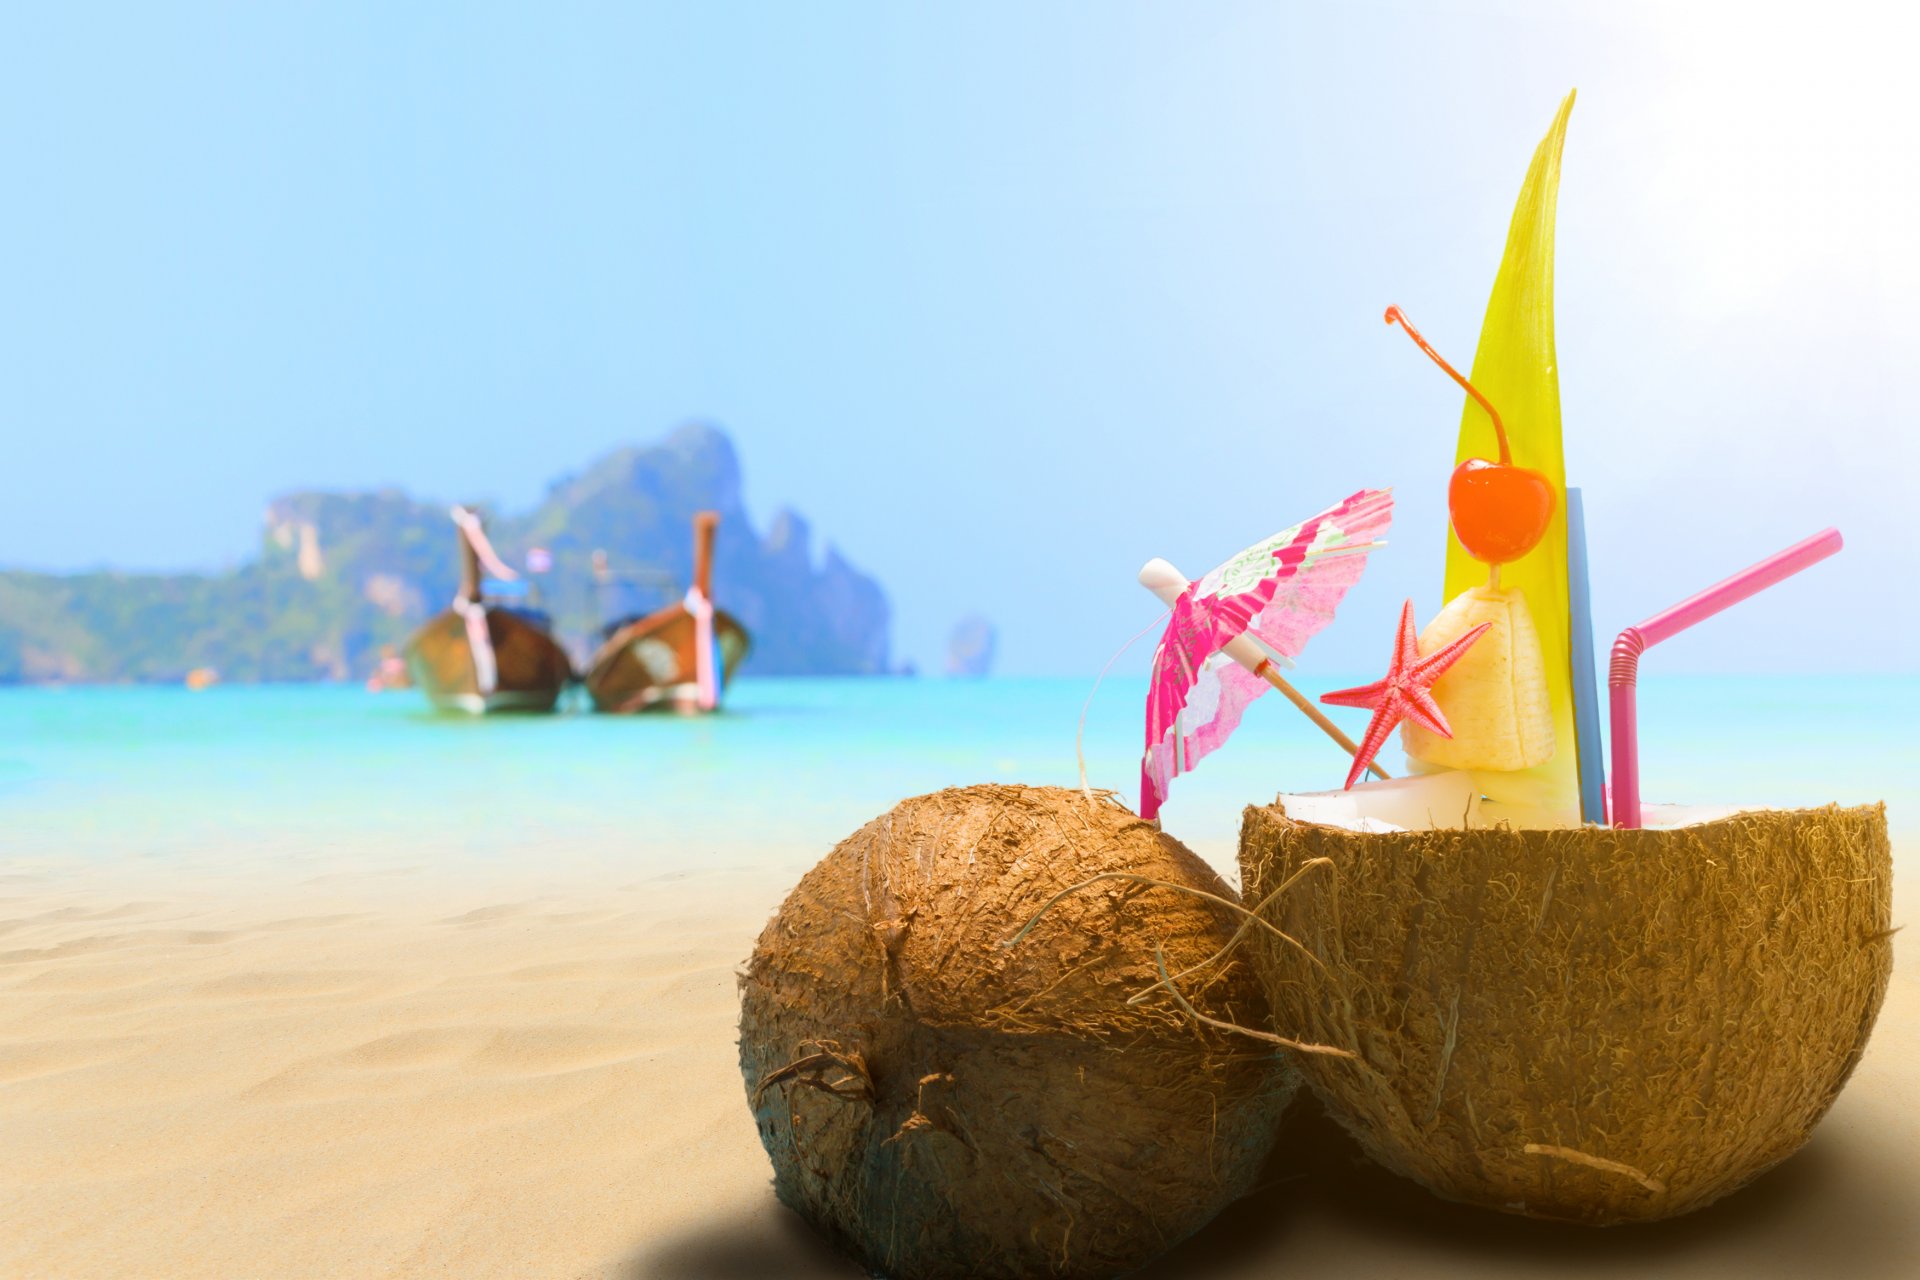 코코넛 벽지,코코넛 워터,여름,휴가,관광 여행,바닷가